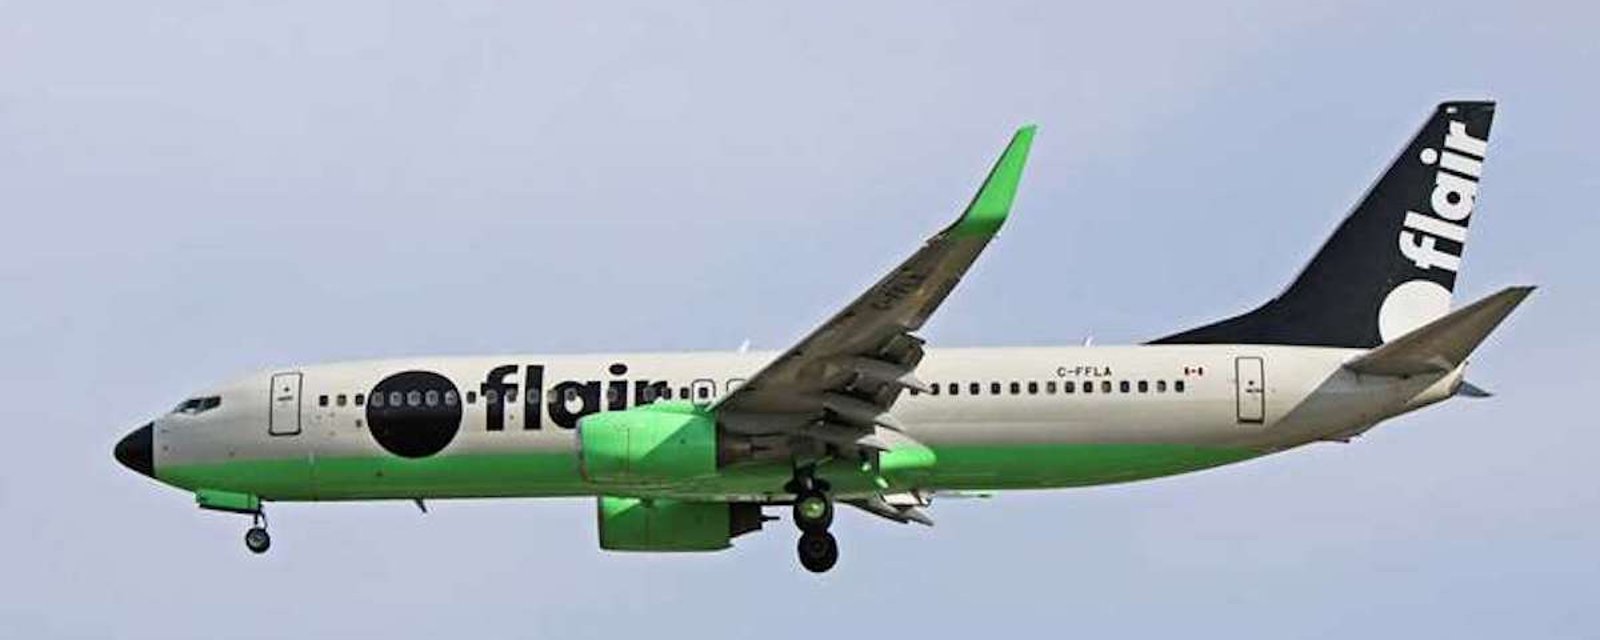 Voyages au Canada: Flair Airlines s’installe à Montréal